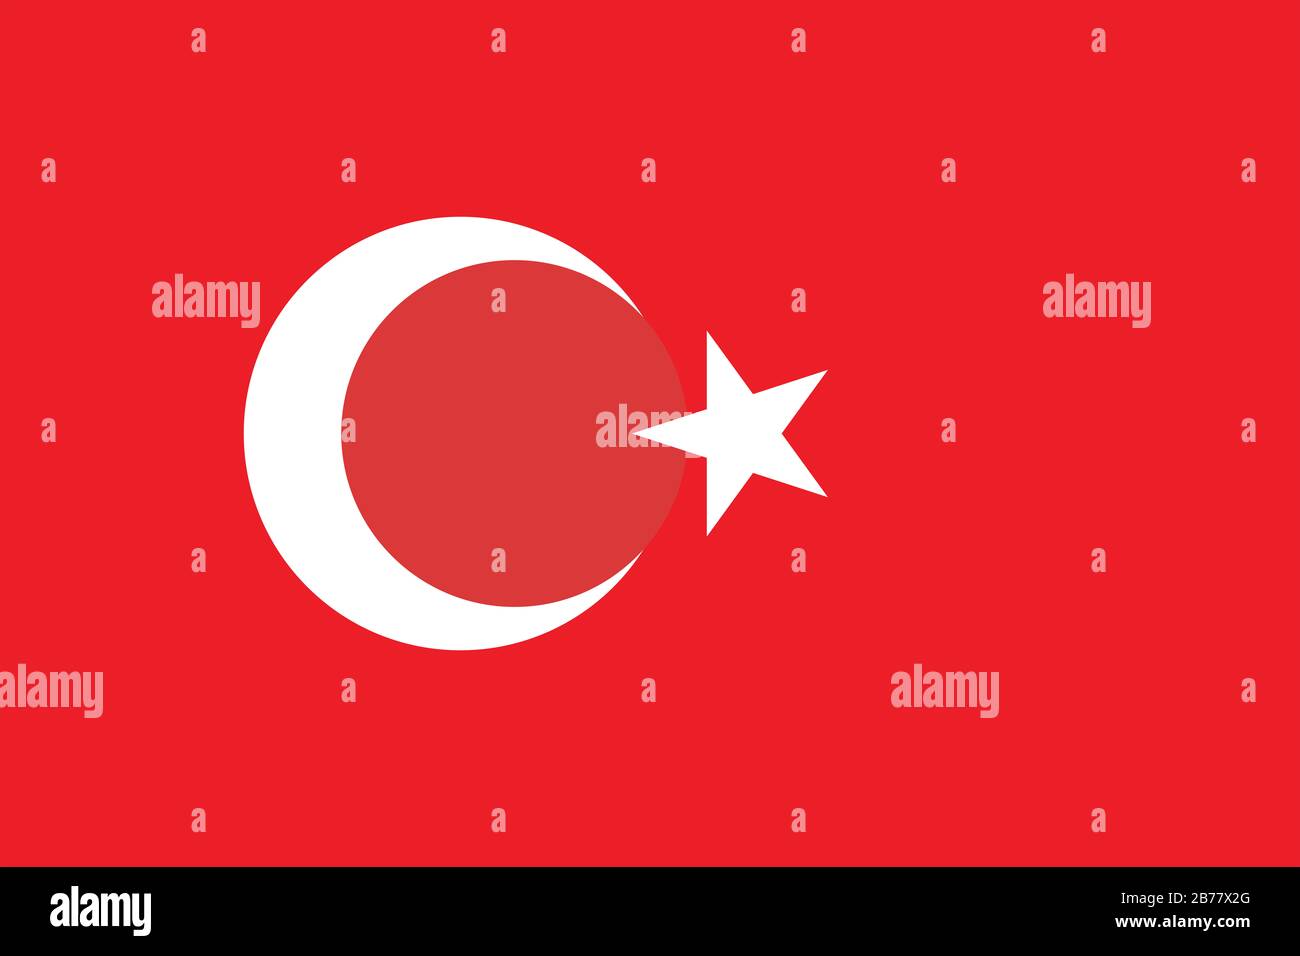 Flagge der Türkei - Standardverhältnis der türkischen Flagge - True RGB-Farbmodus Stockfoto